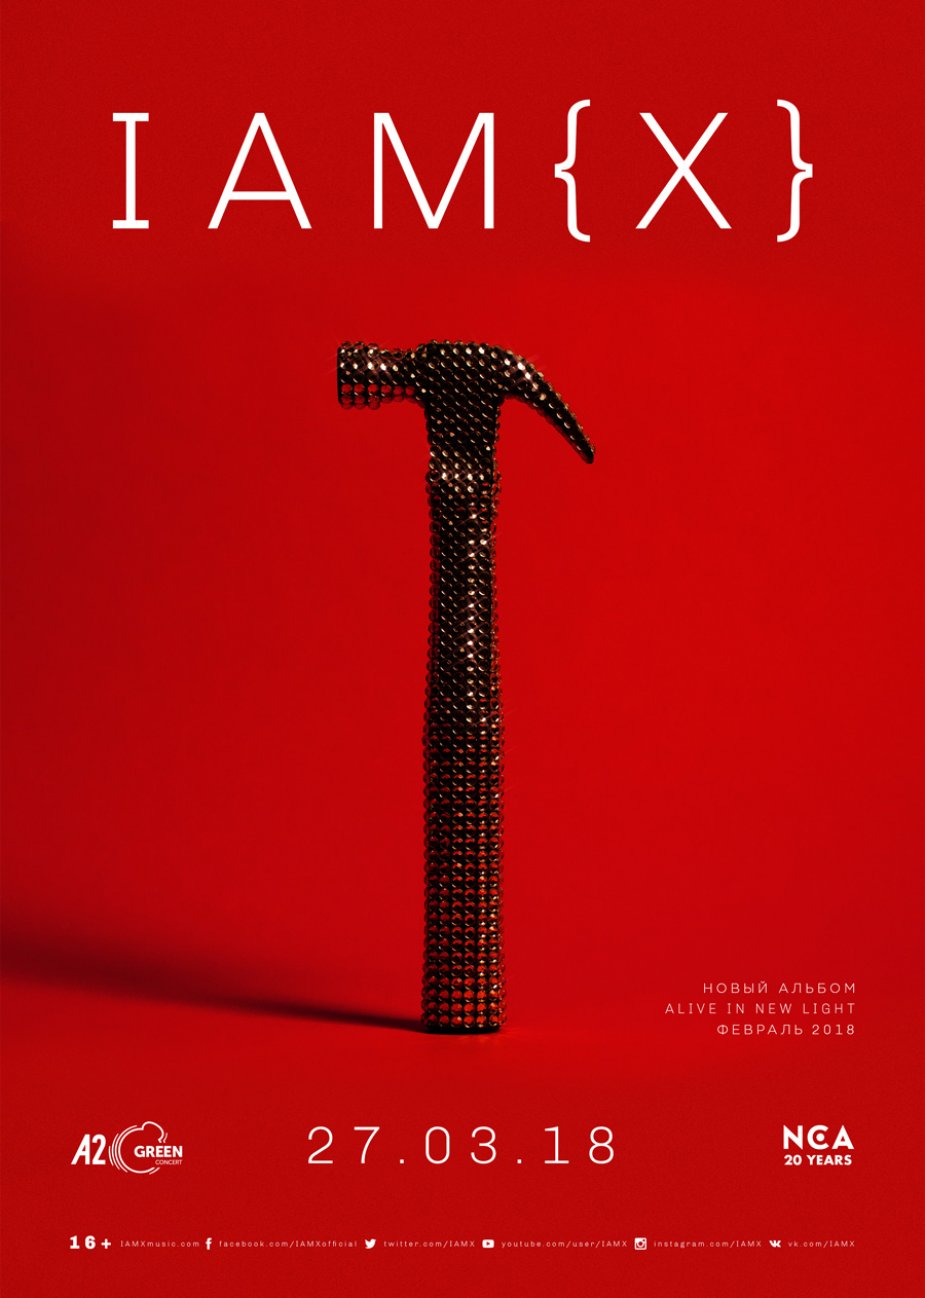 IAMX представит новый альбом